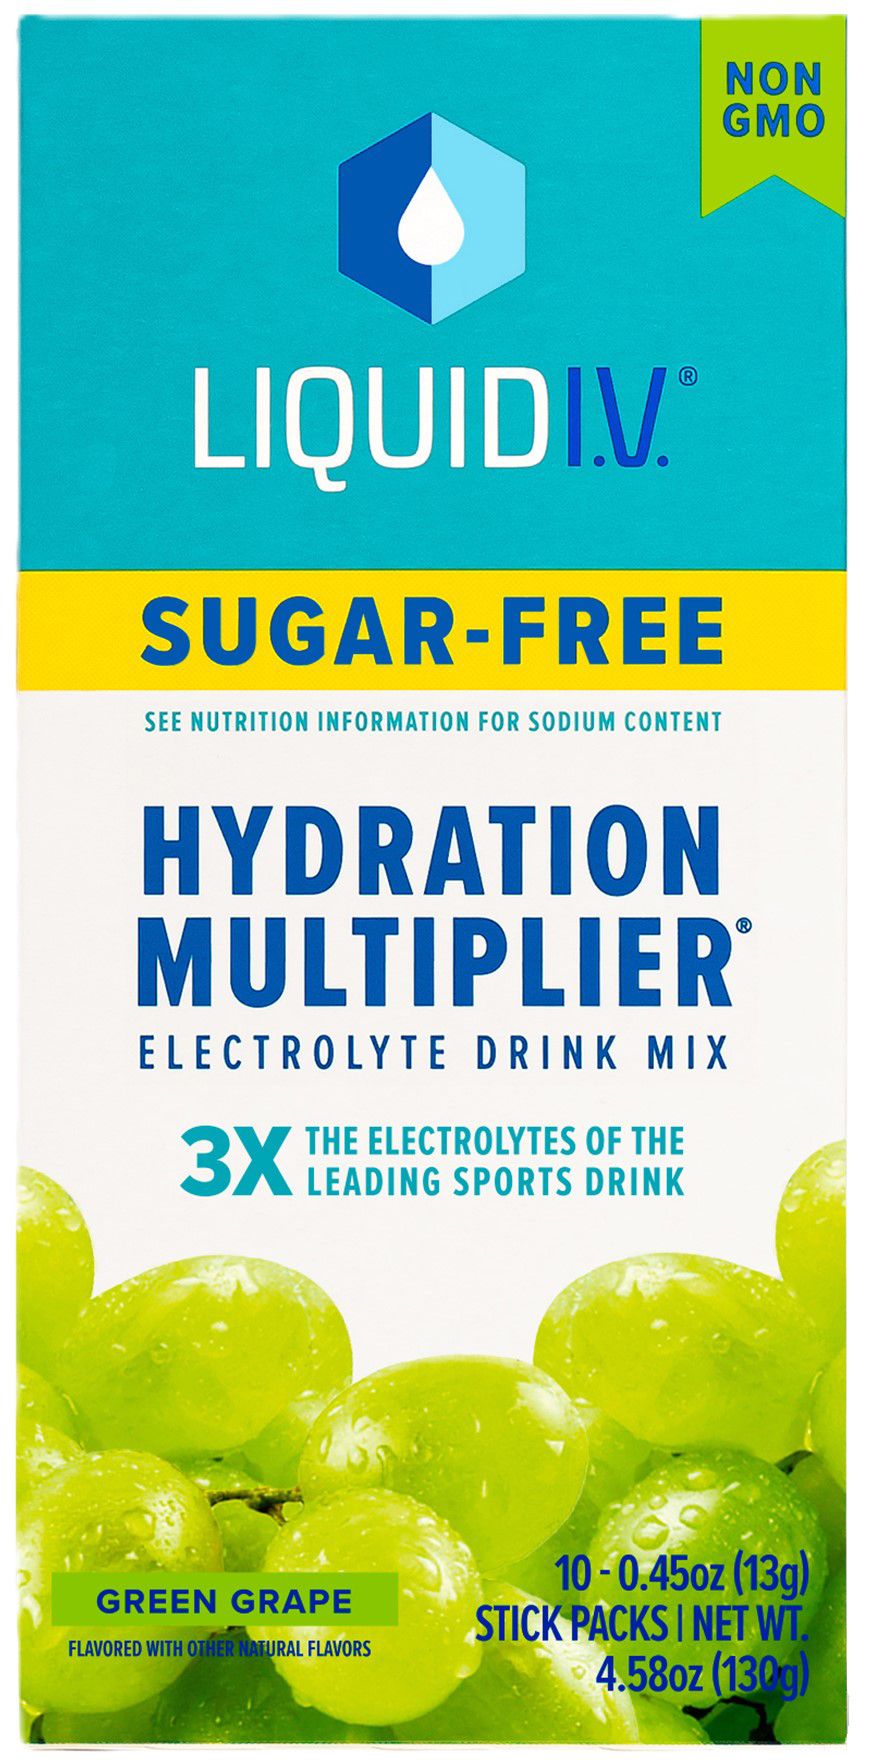 Liquid I.V. Sugar-Free Hydration Multiplier – 10 Pack